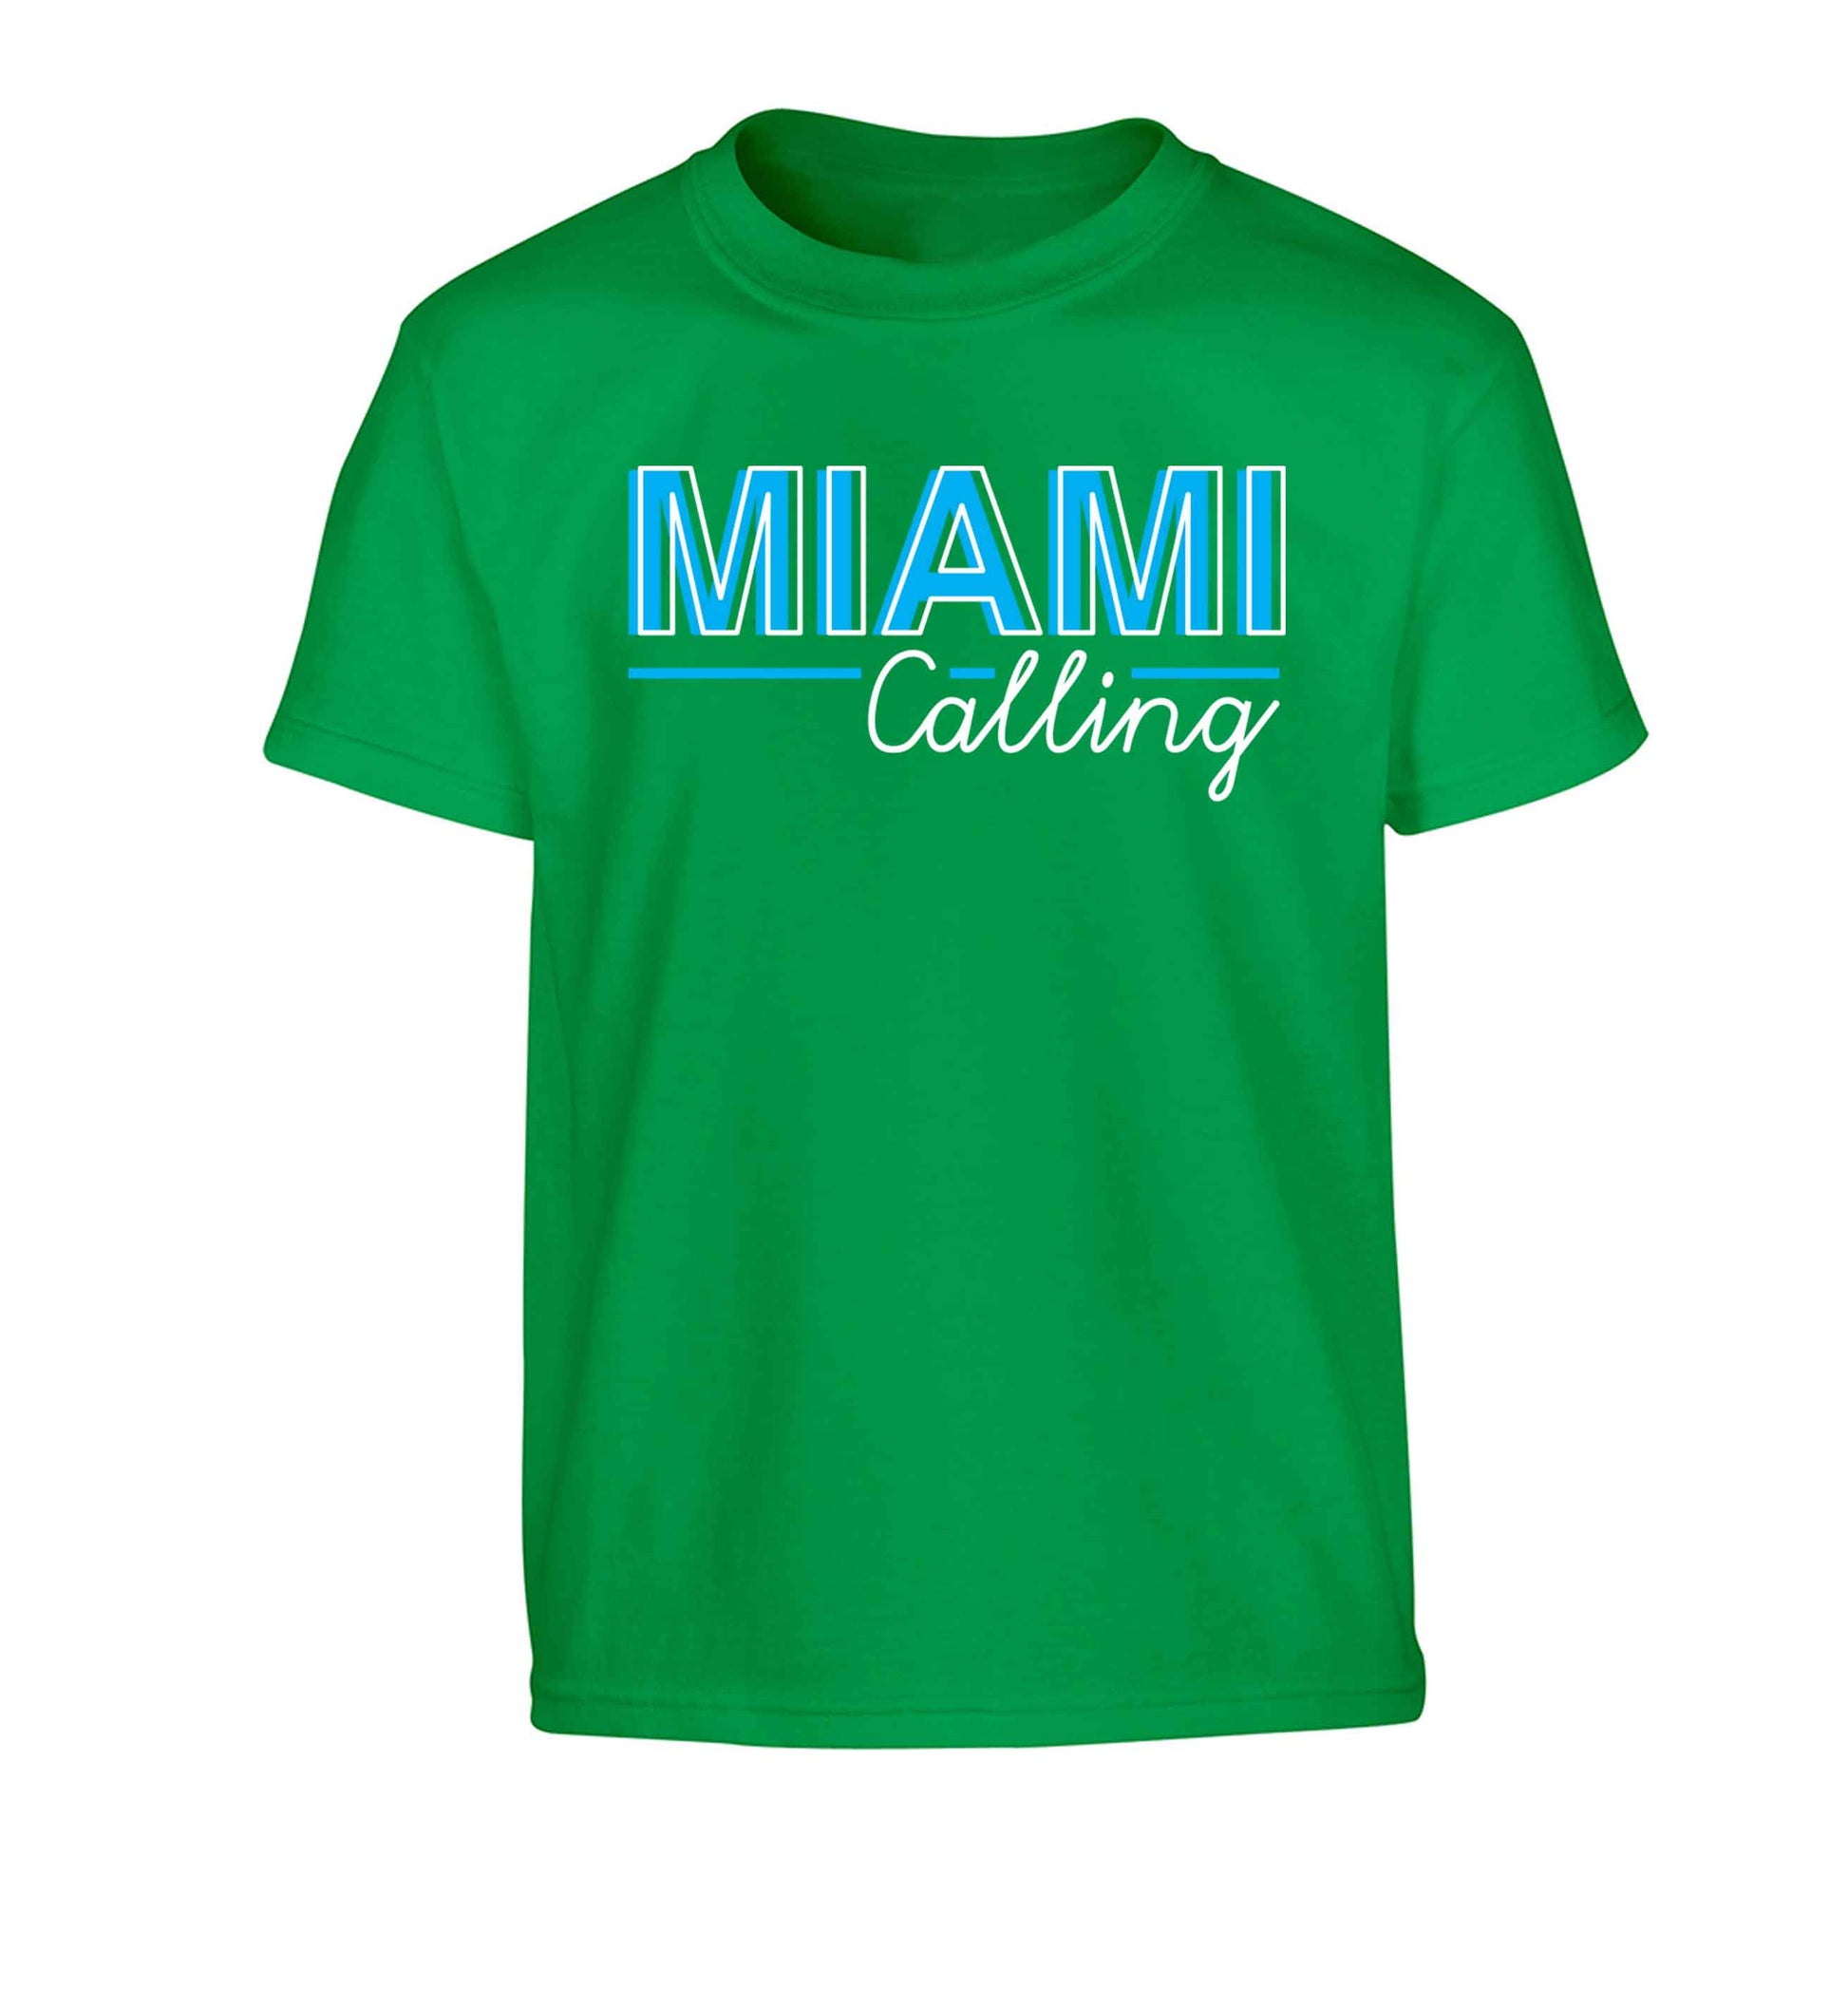 Miami calling Children's green Tshirt 12-13 Years